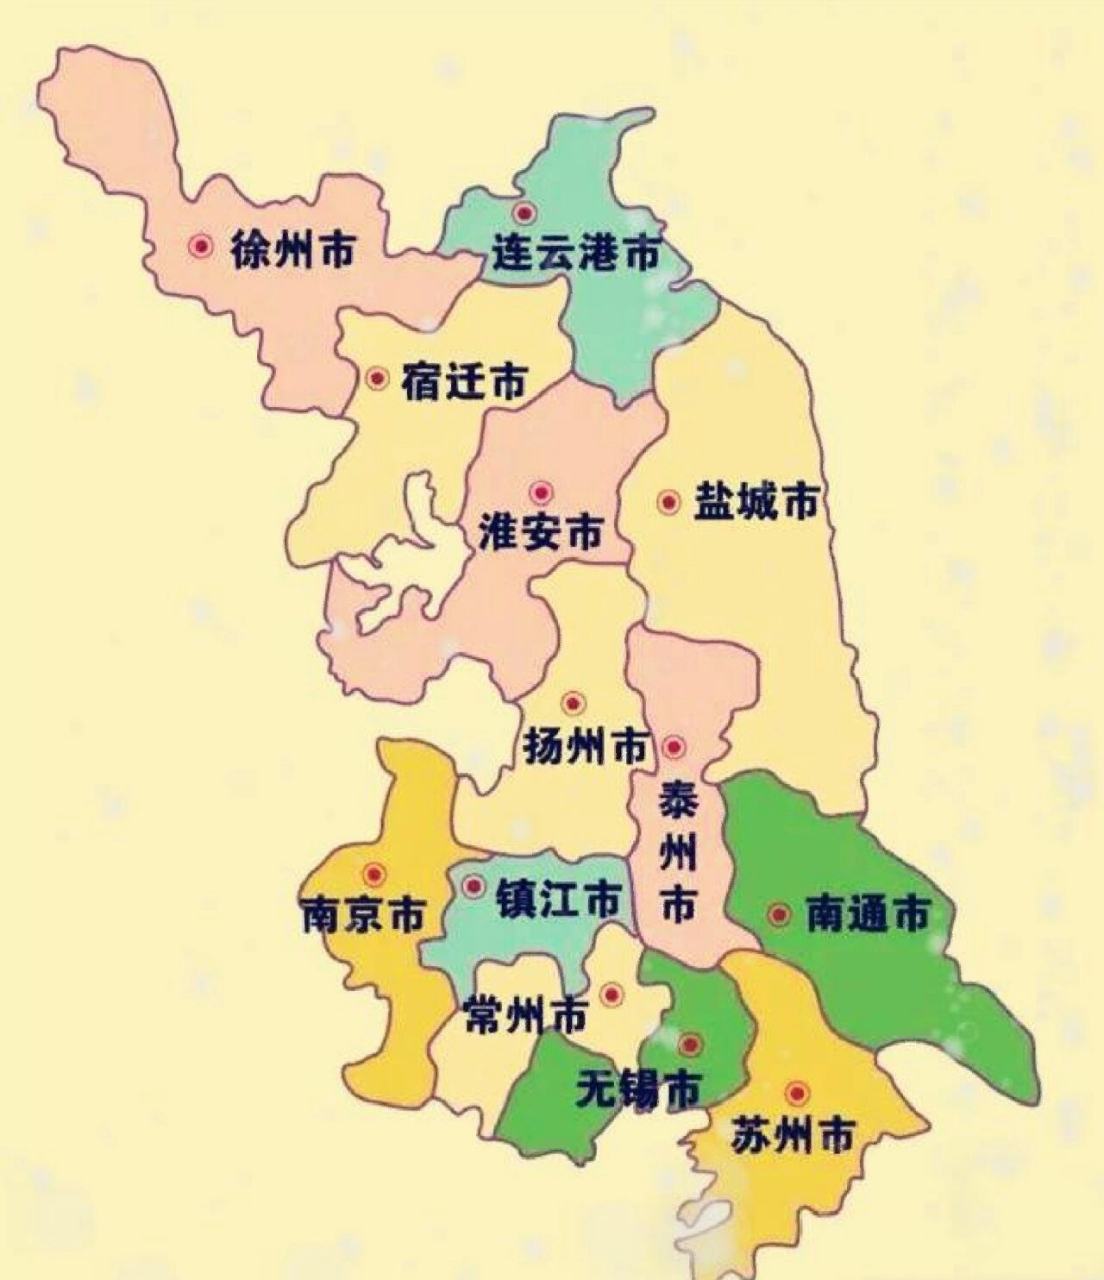 江苏省地图 简图图片